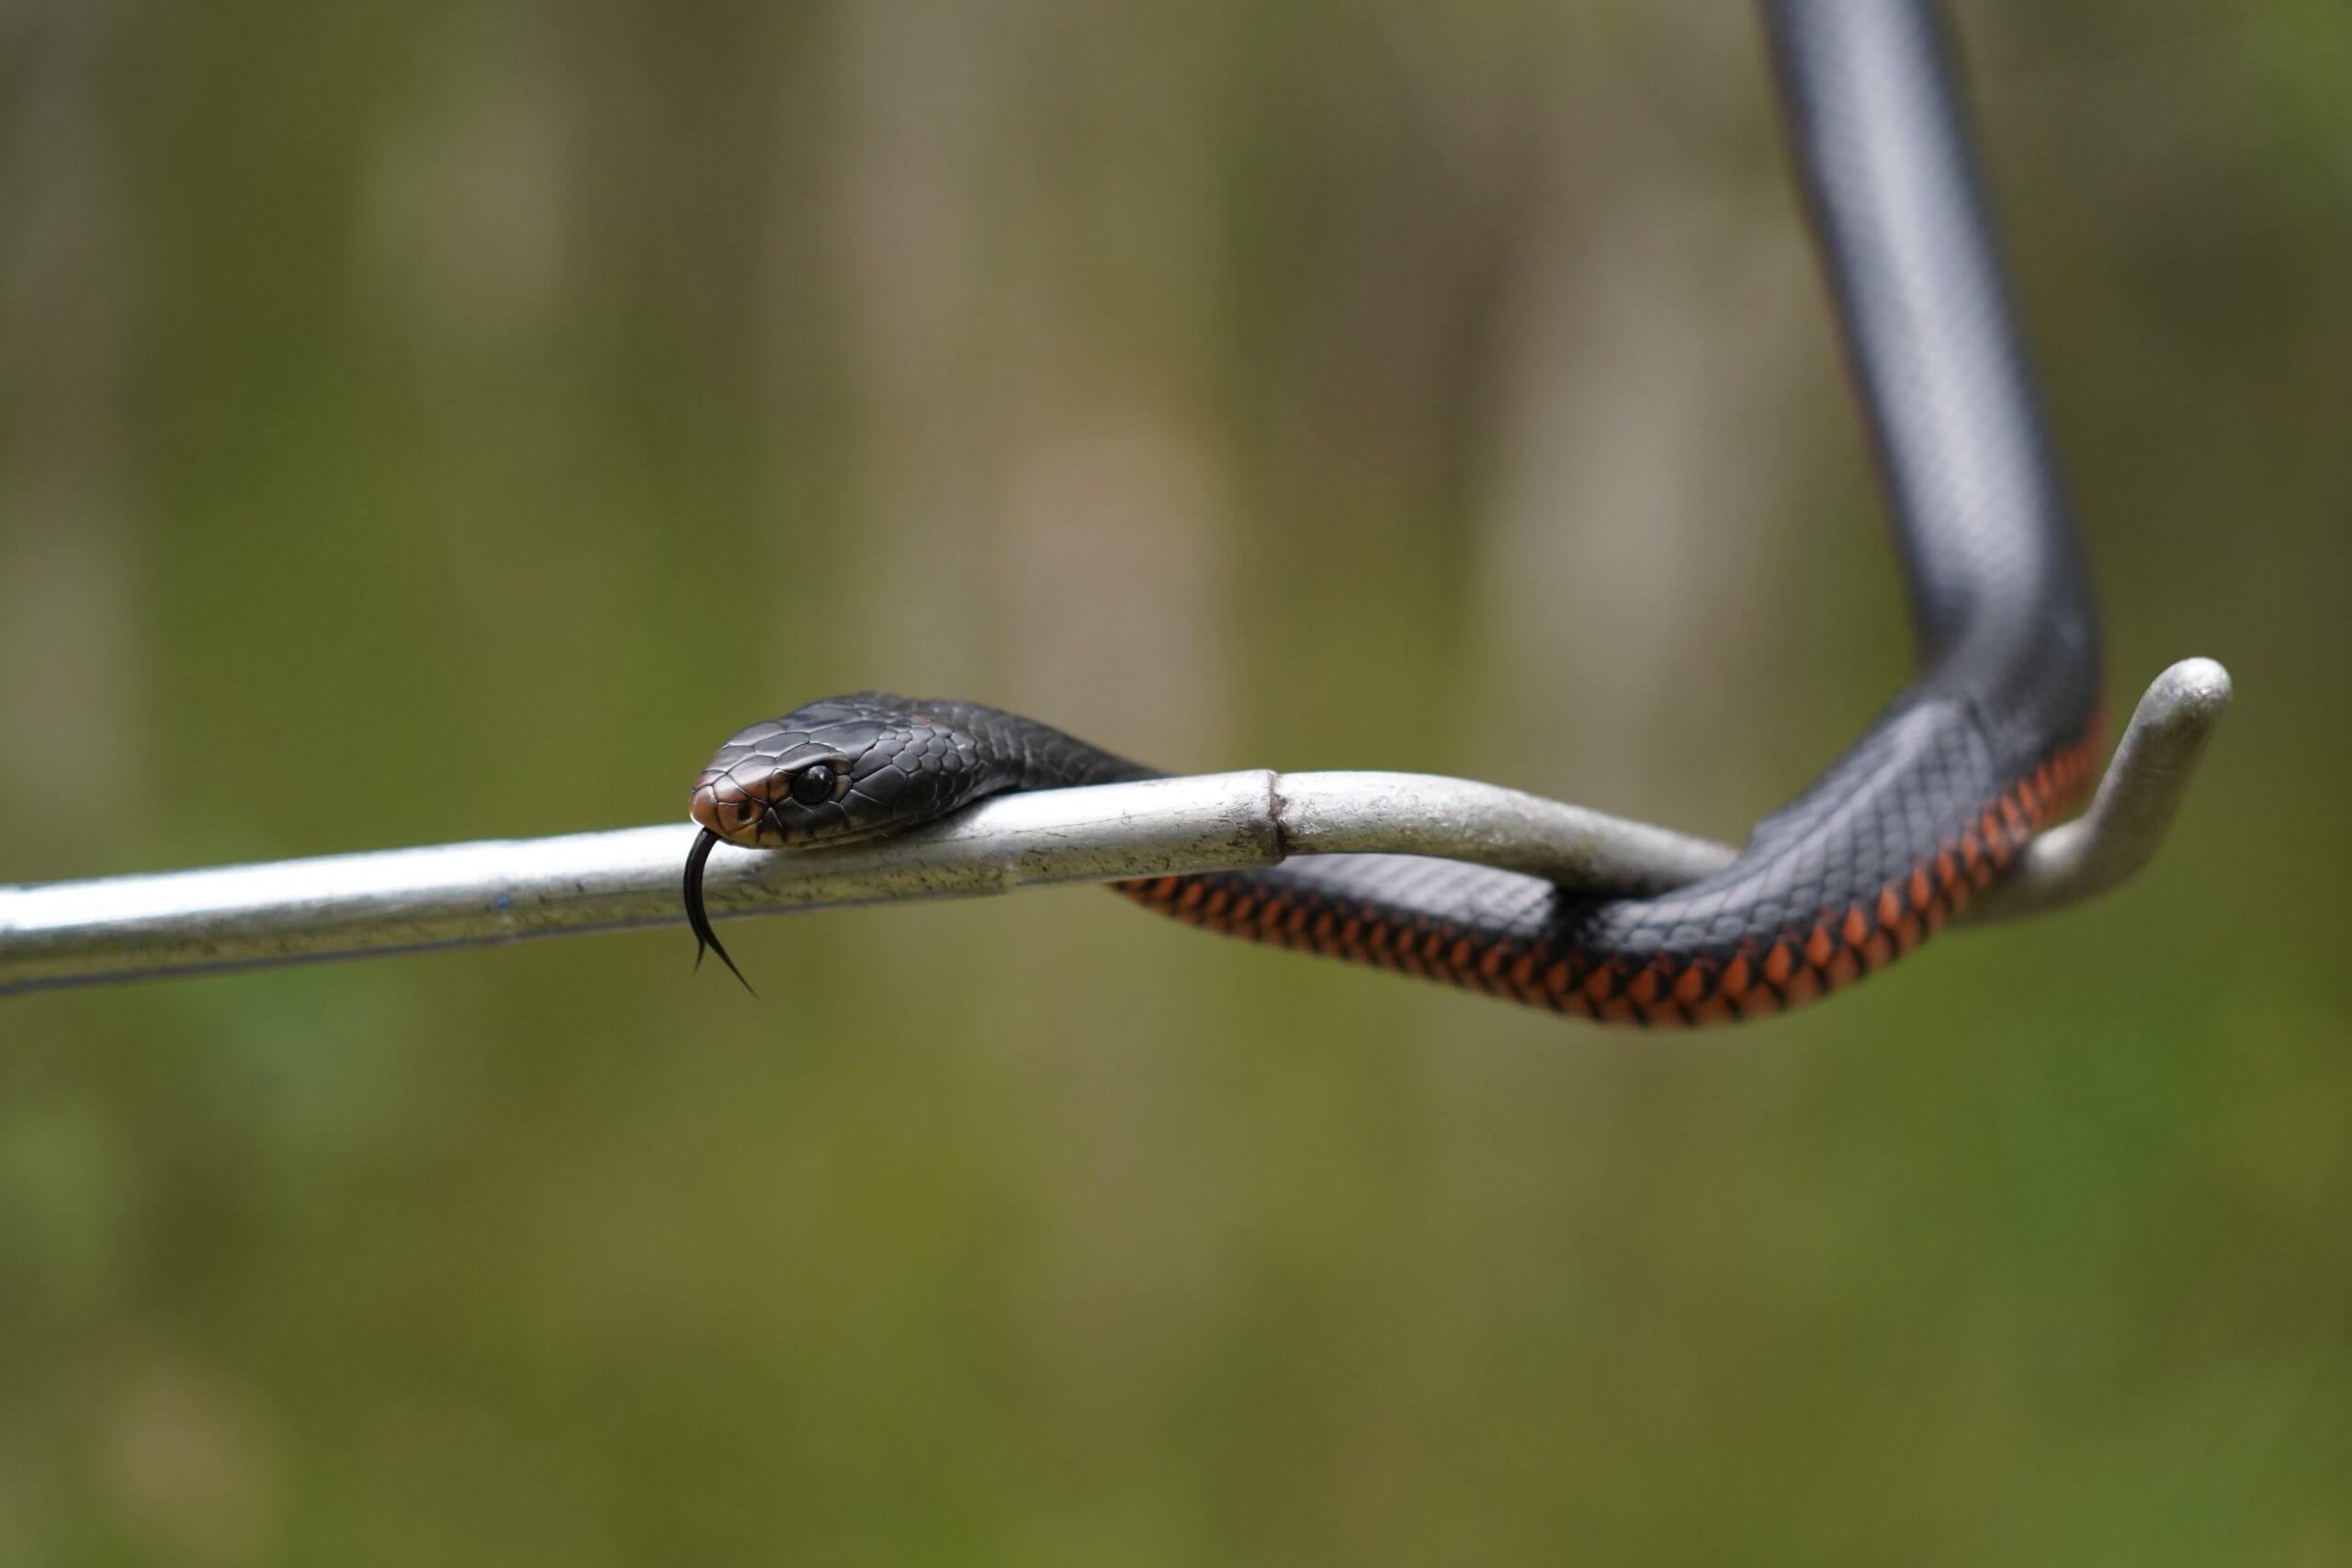 Red Bellied Black Snake on Snake Hook